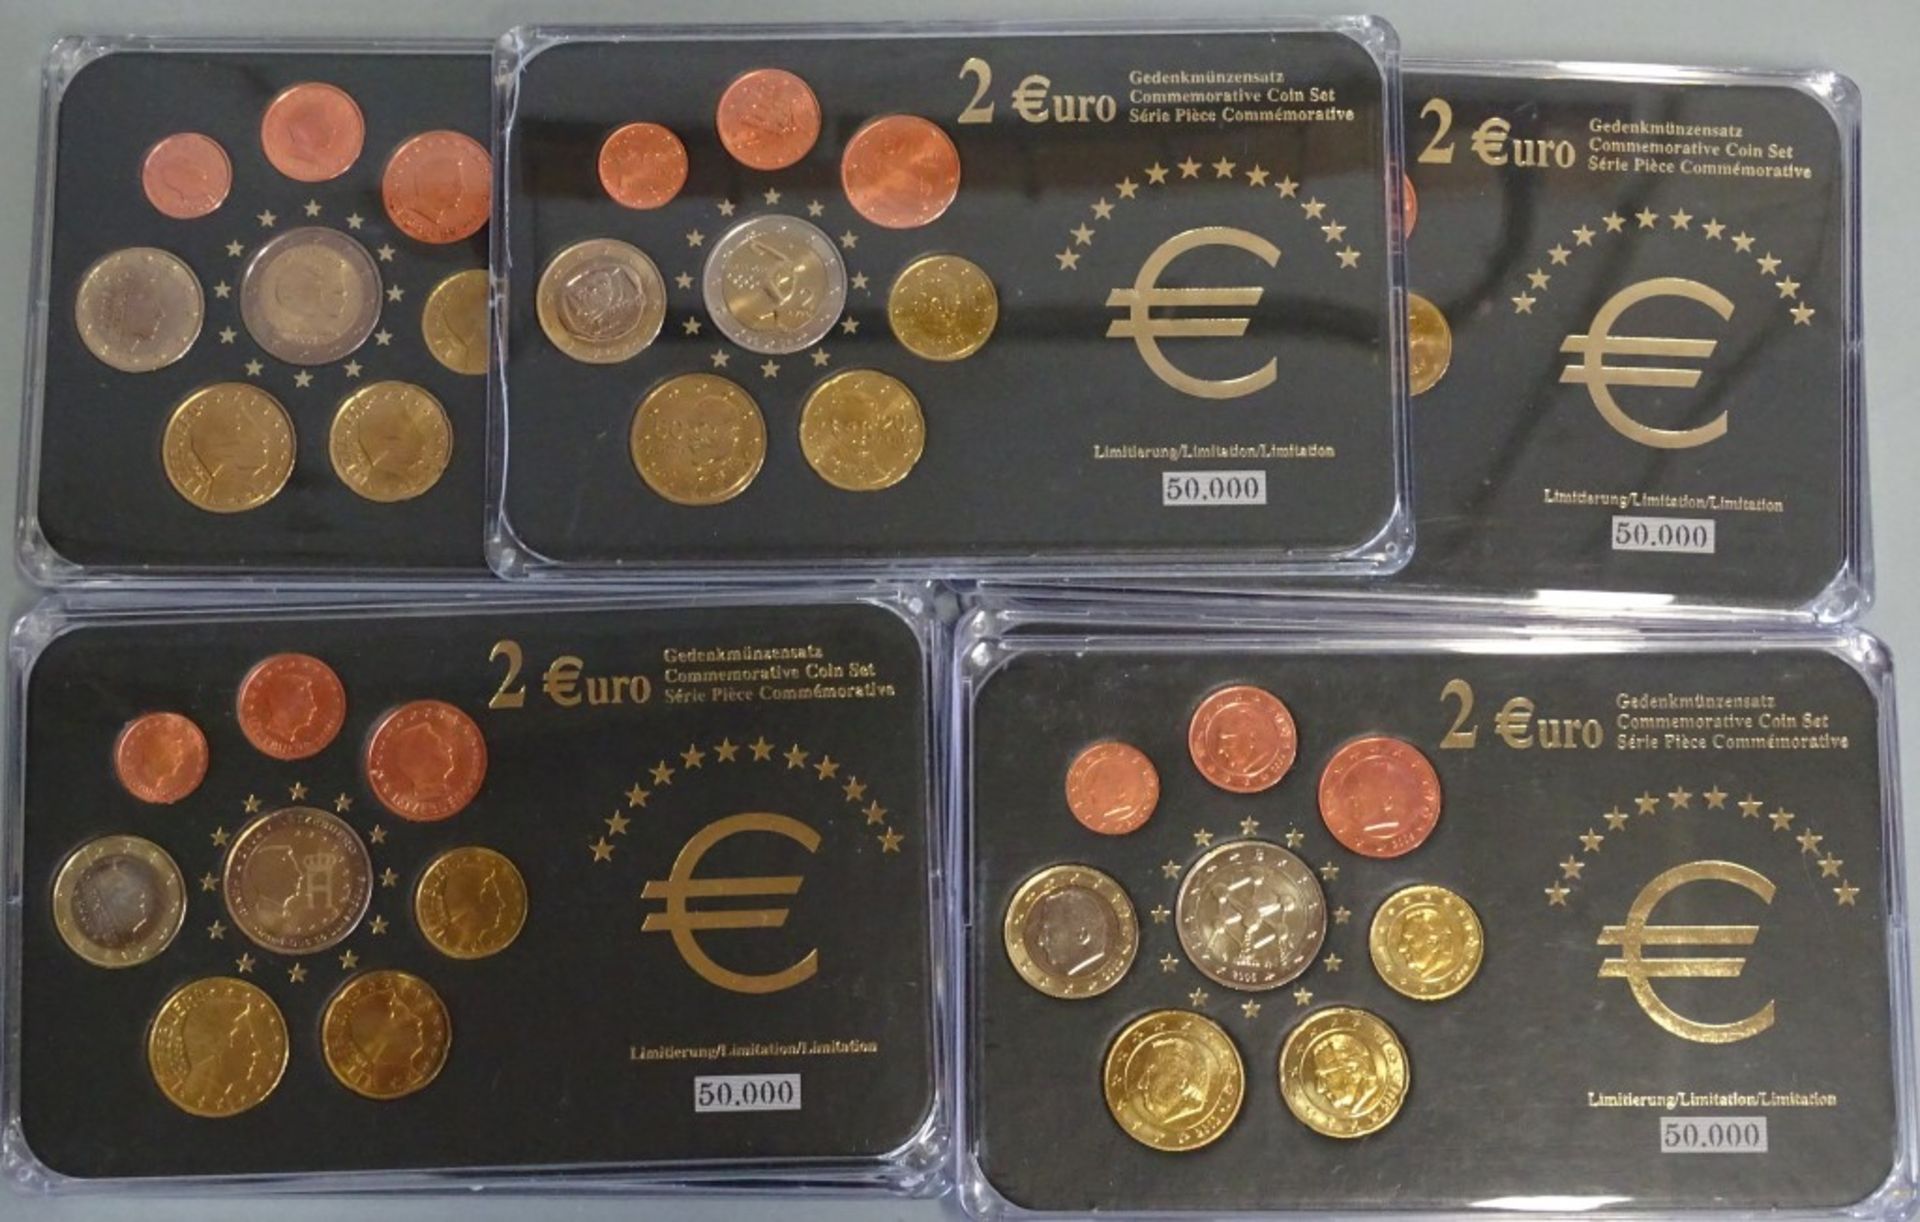 Konvolut Euro Gedenk-u. Kursmünzsätze in Kasten,ges.11 Stück,= 42,68 Euro.O - Bild 5 aus 10